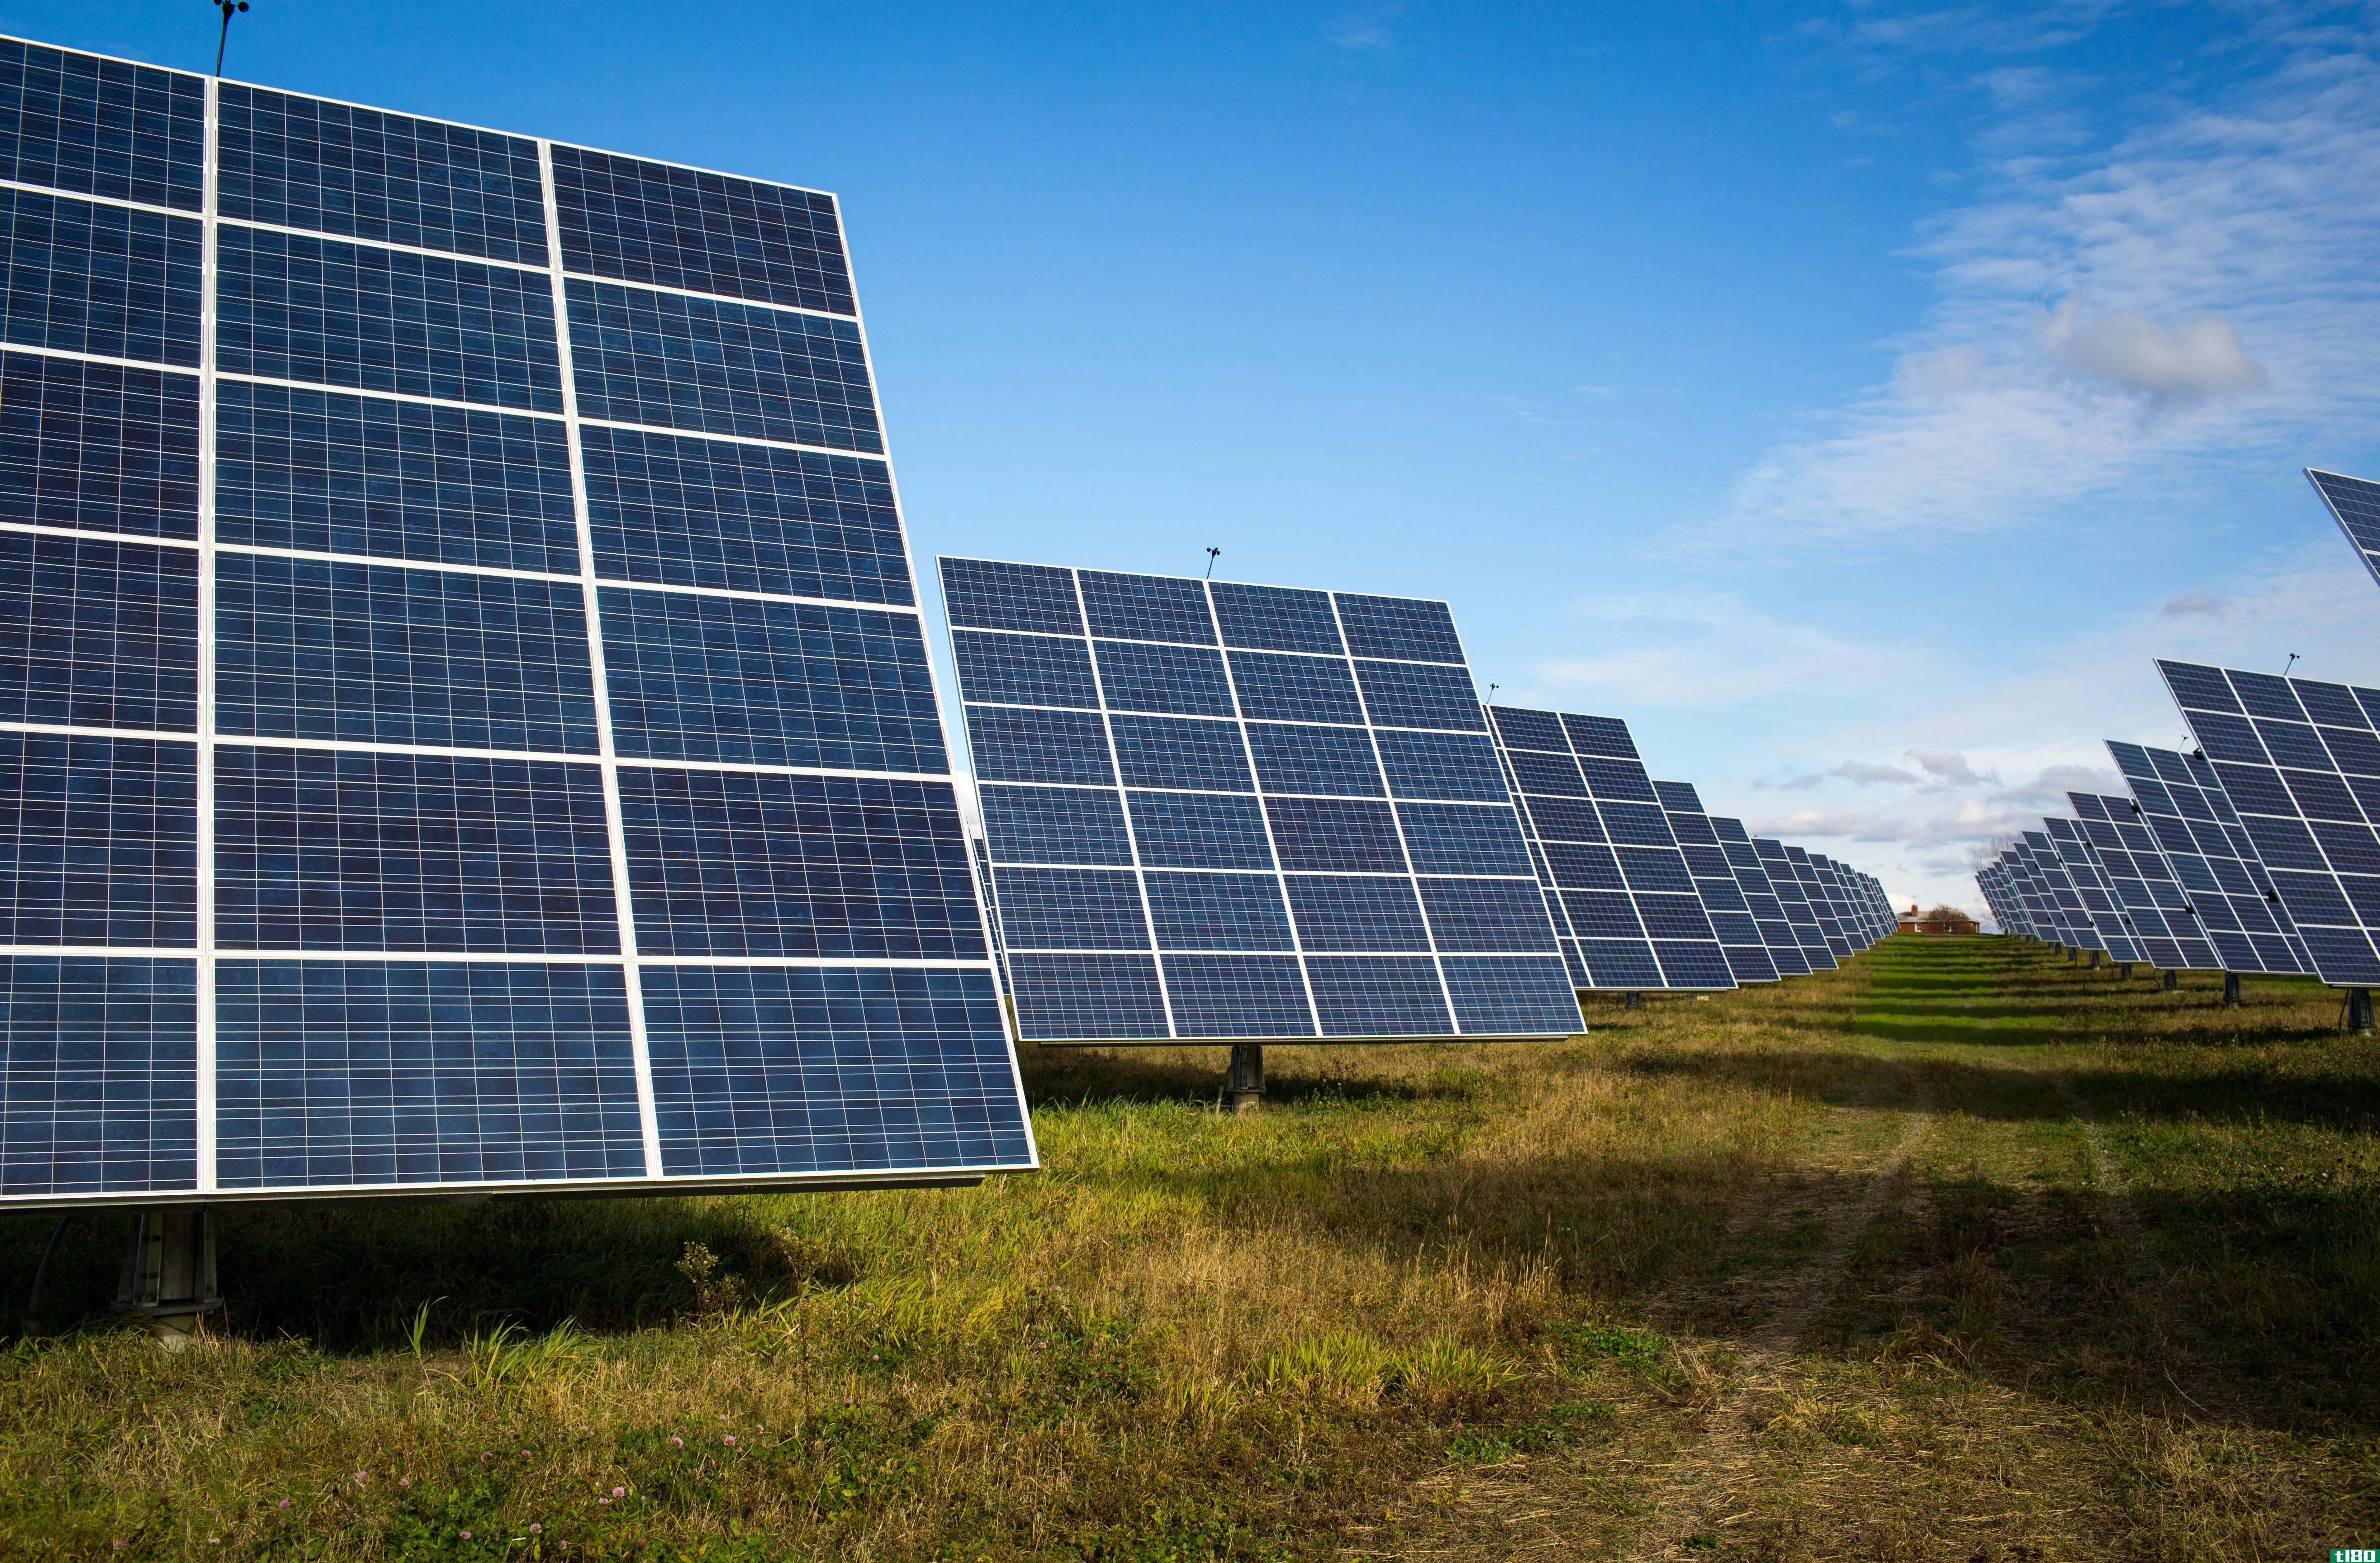 埃隆·马斯克支持的solarcity公司声称已经制造出业界最高效的太阳能电池板